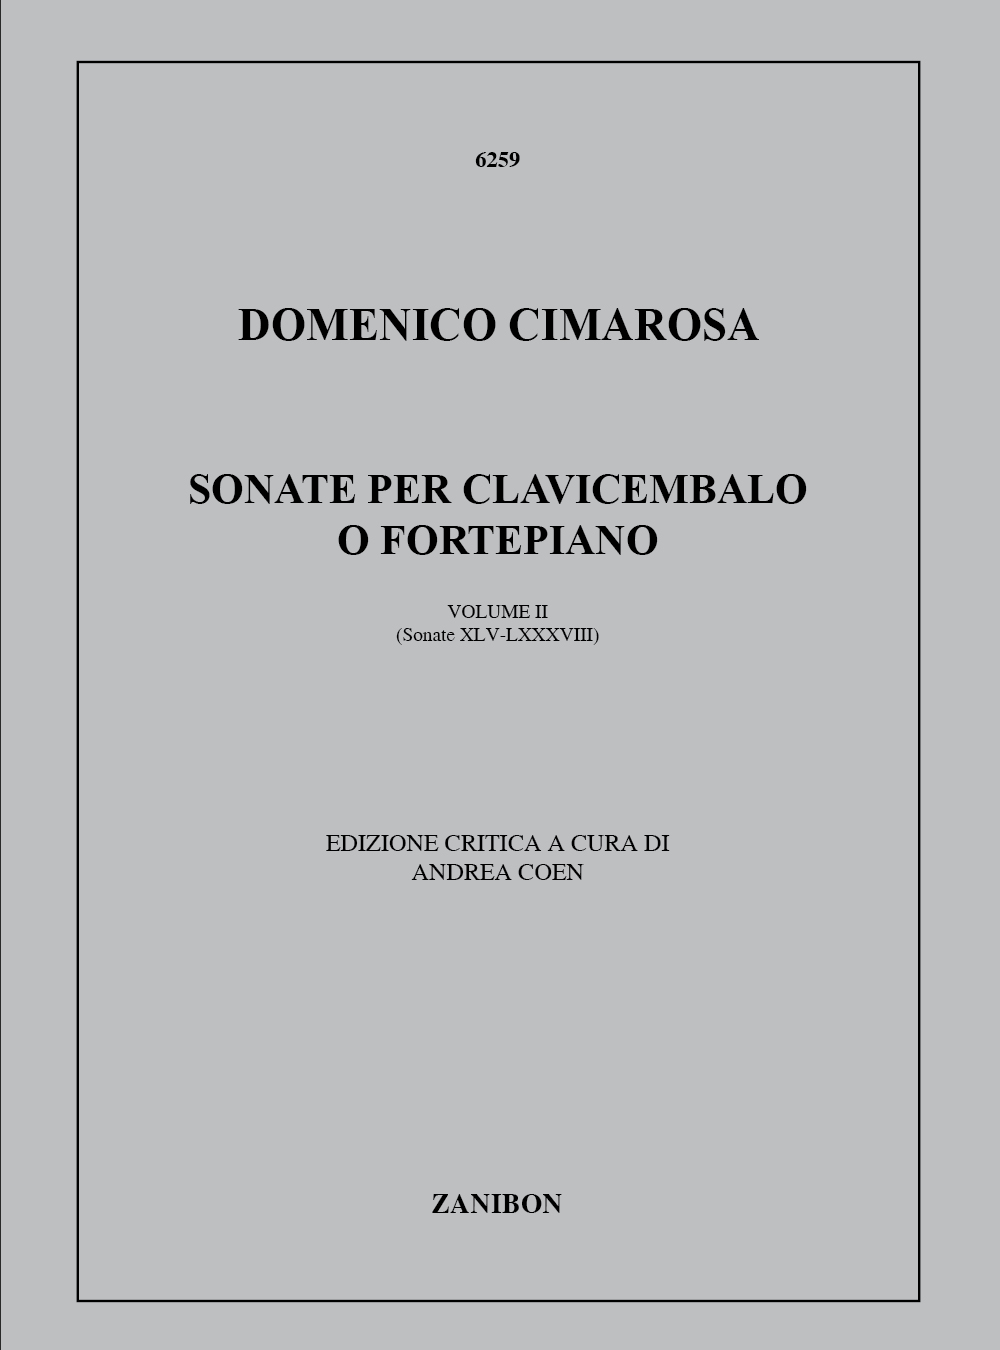 88 Sonate Per Clavicembalo O Fortepiano 2 (45-88): Softcover, Clavicembalo O 2 Clavicembali